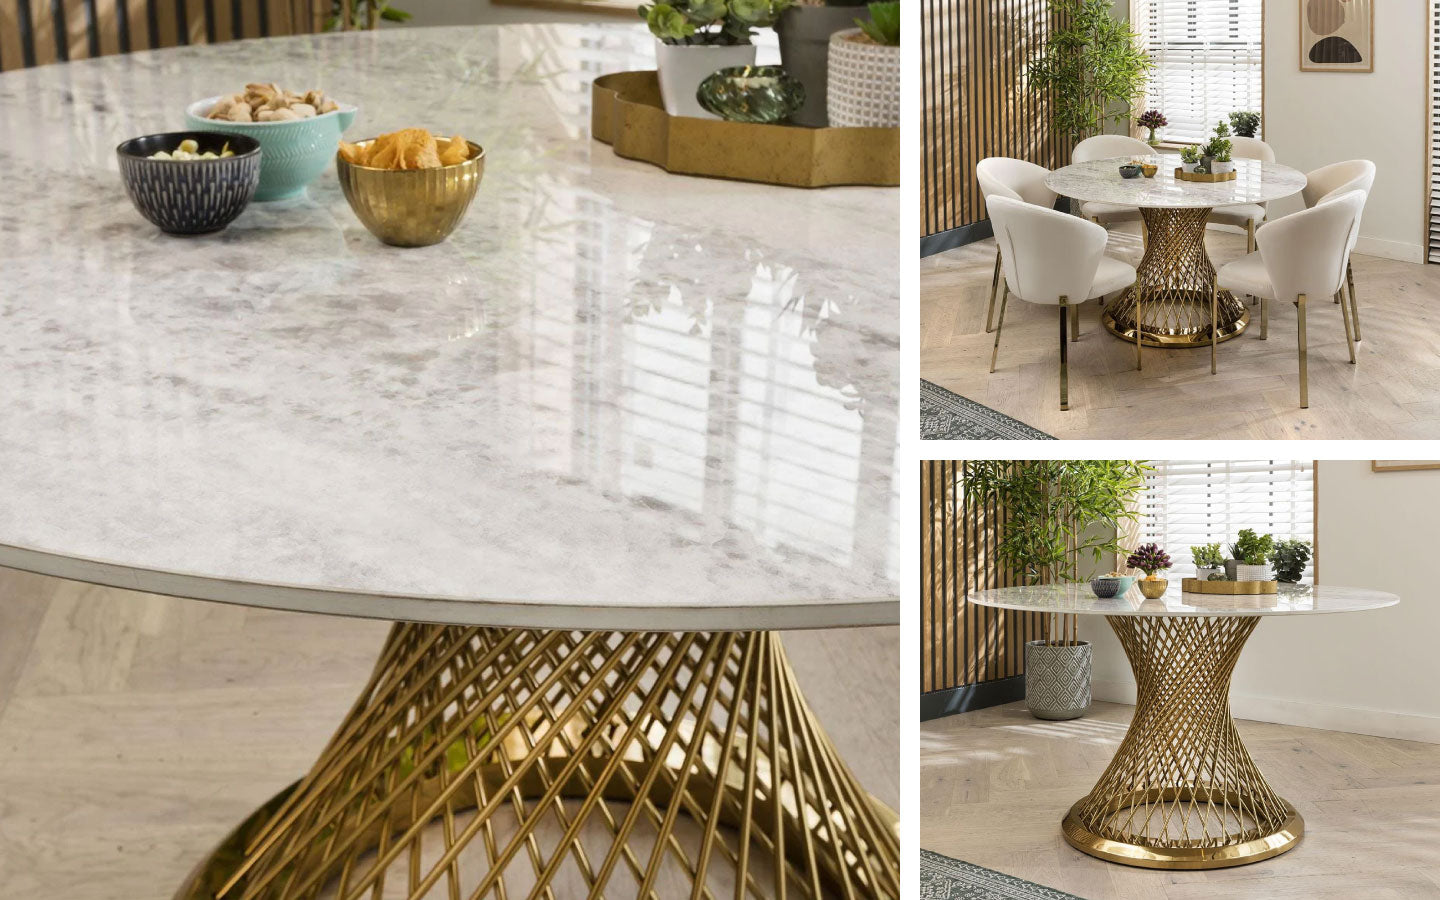 Sunburst Ceramic Dining Table - White 135cm